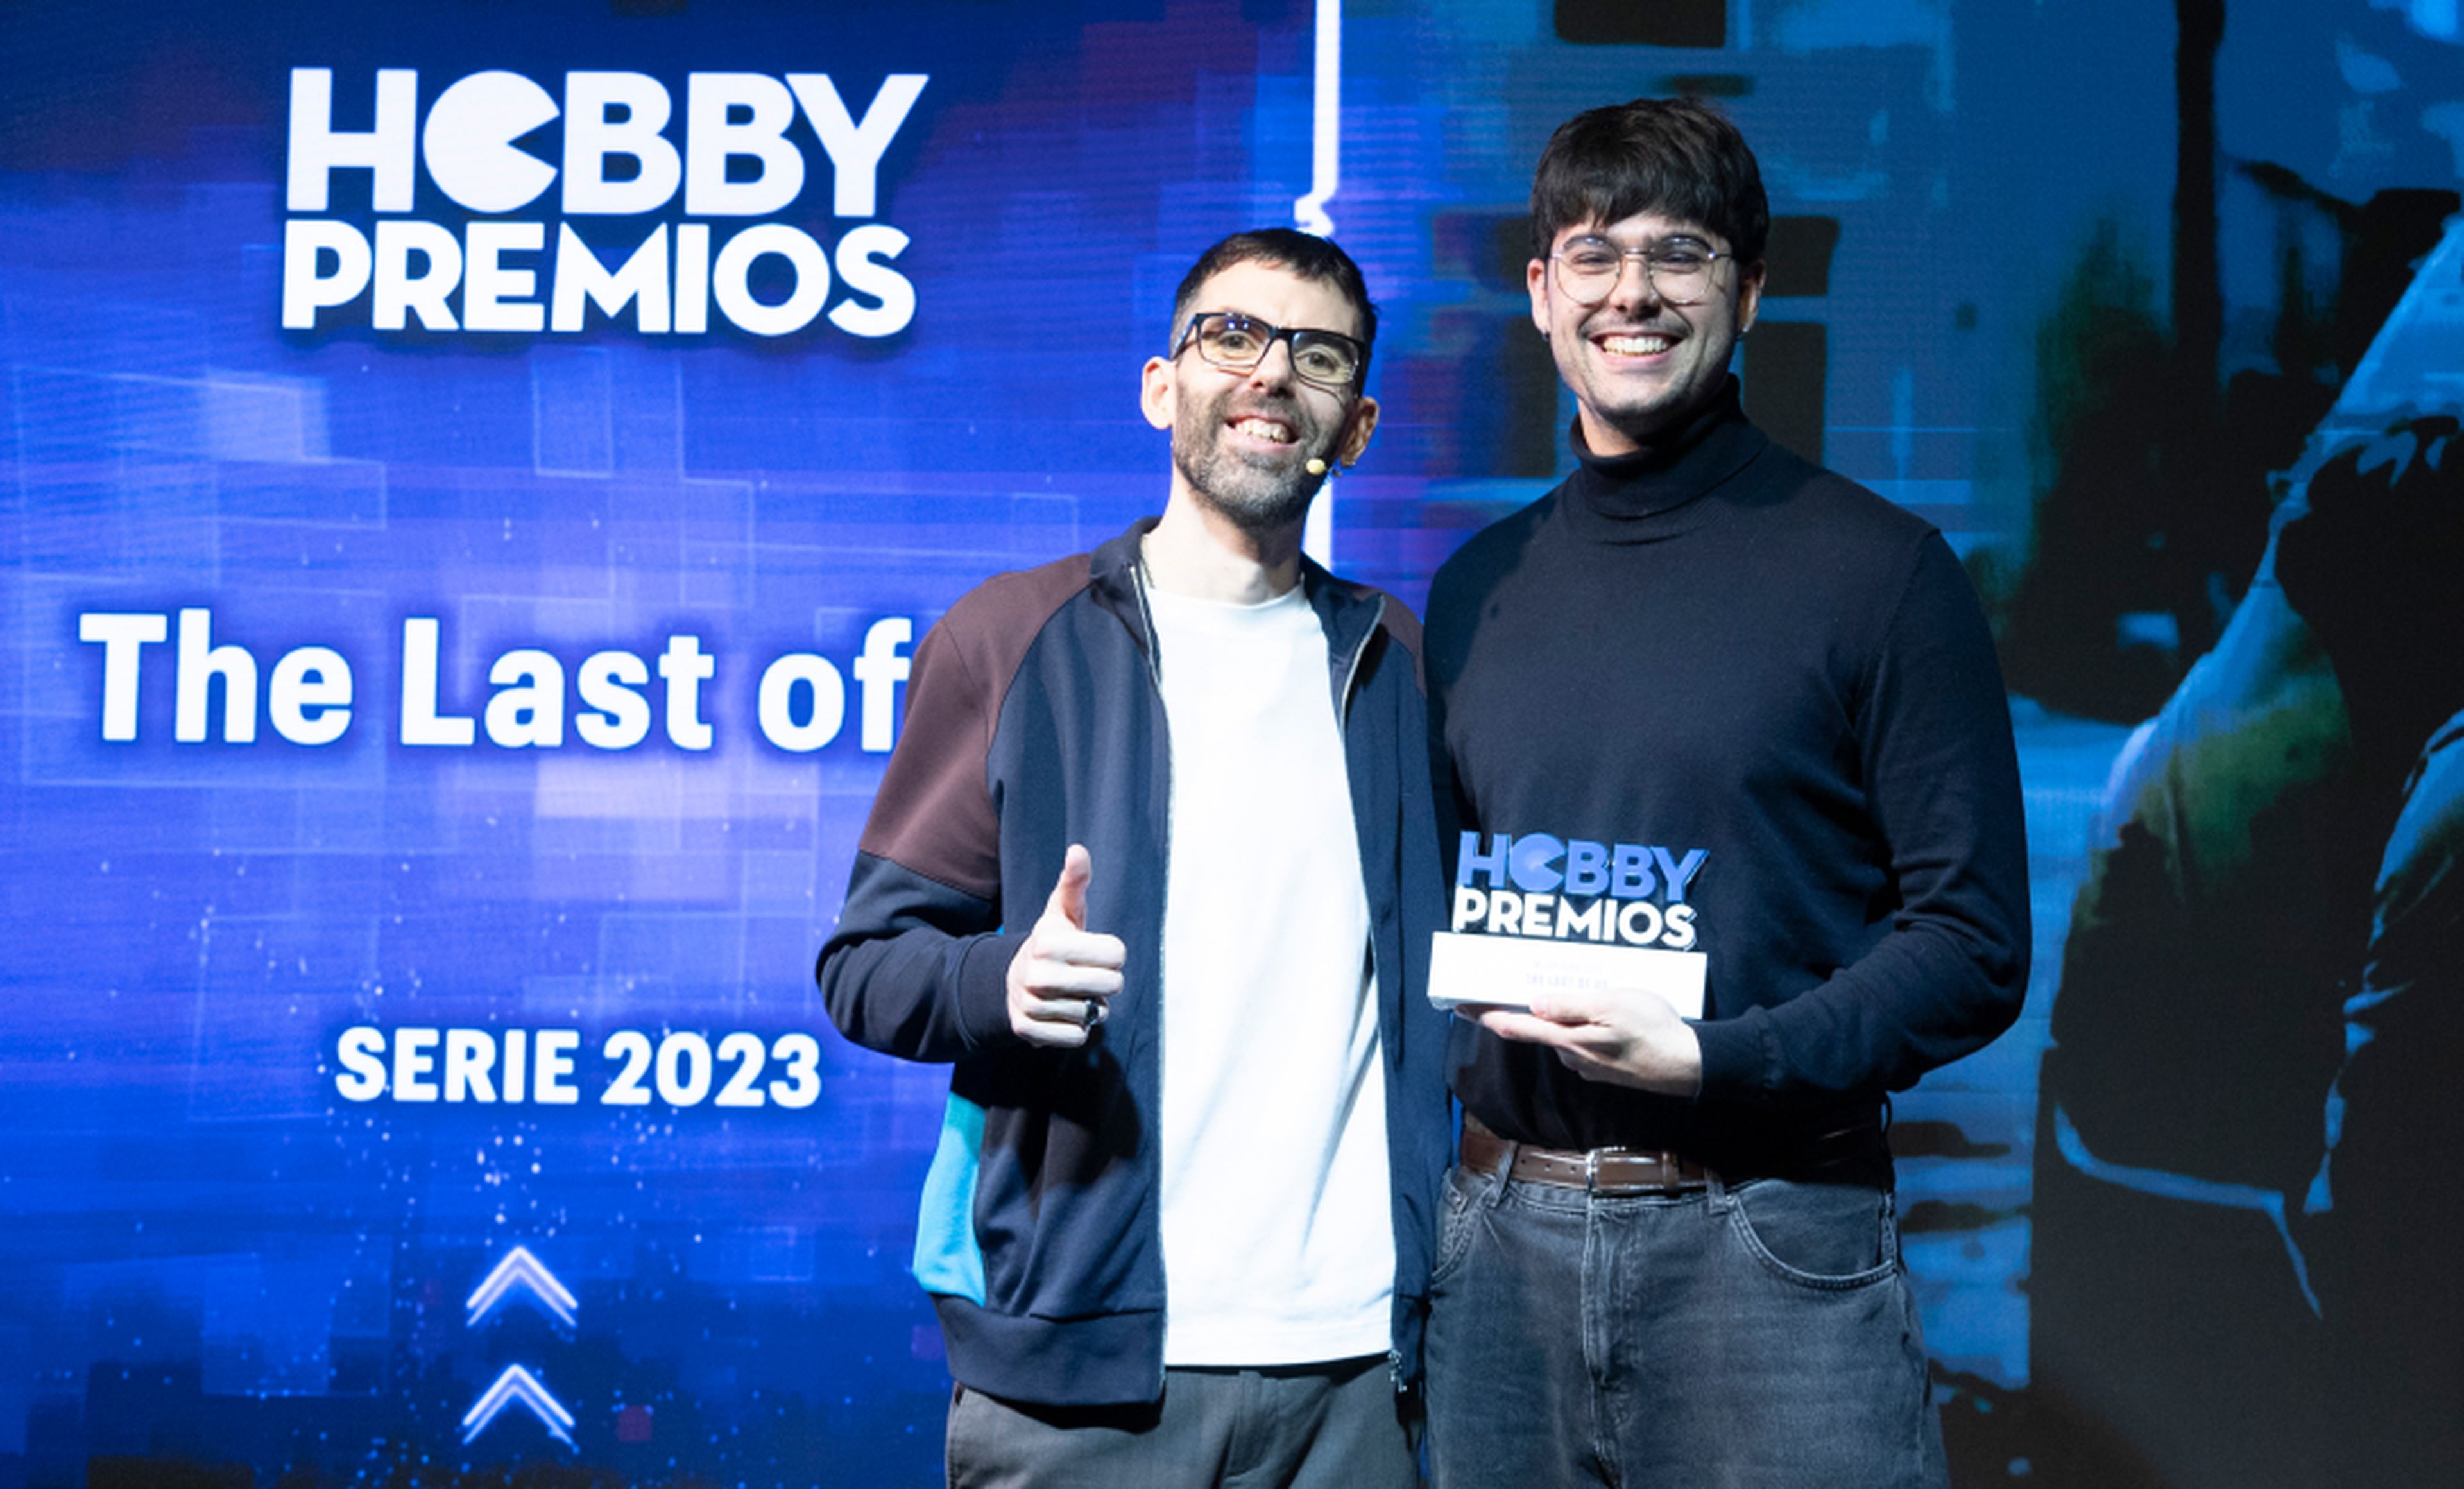 De izquierda a derecha: Aarón García de HBO recoge de manos de Ekaitz Ortega, coordinador de HobbyCine el premio a mejor serie absoluta para The Last of Us. 